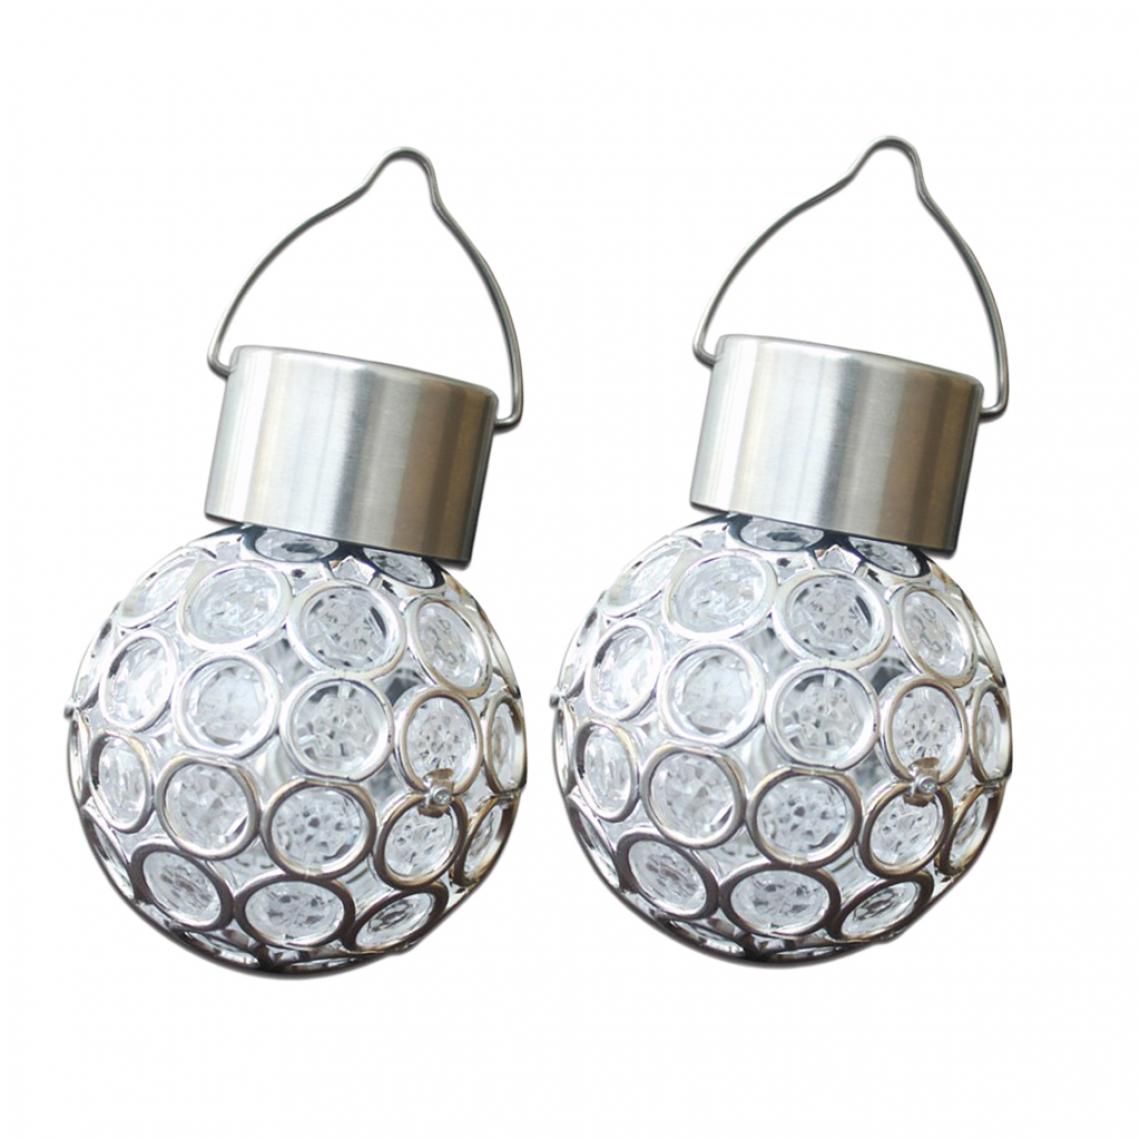 marque generique - 2pcs Lampe Boule Solaire Jardin Globe 3.15inch Led Sans Fil - Eclairage solaire